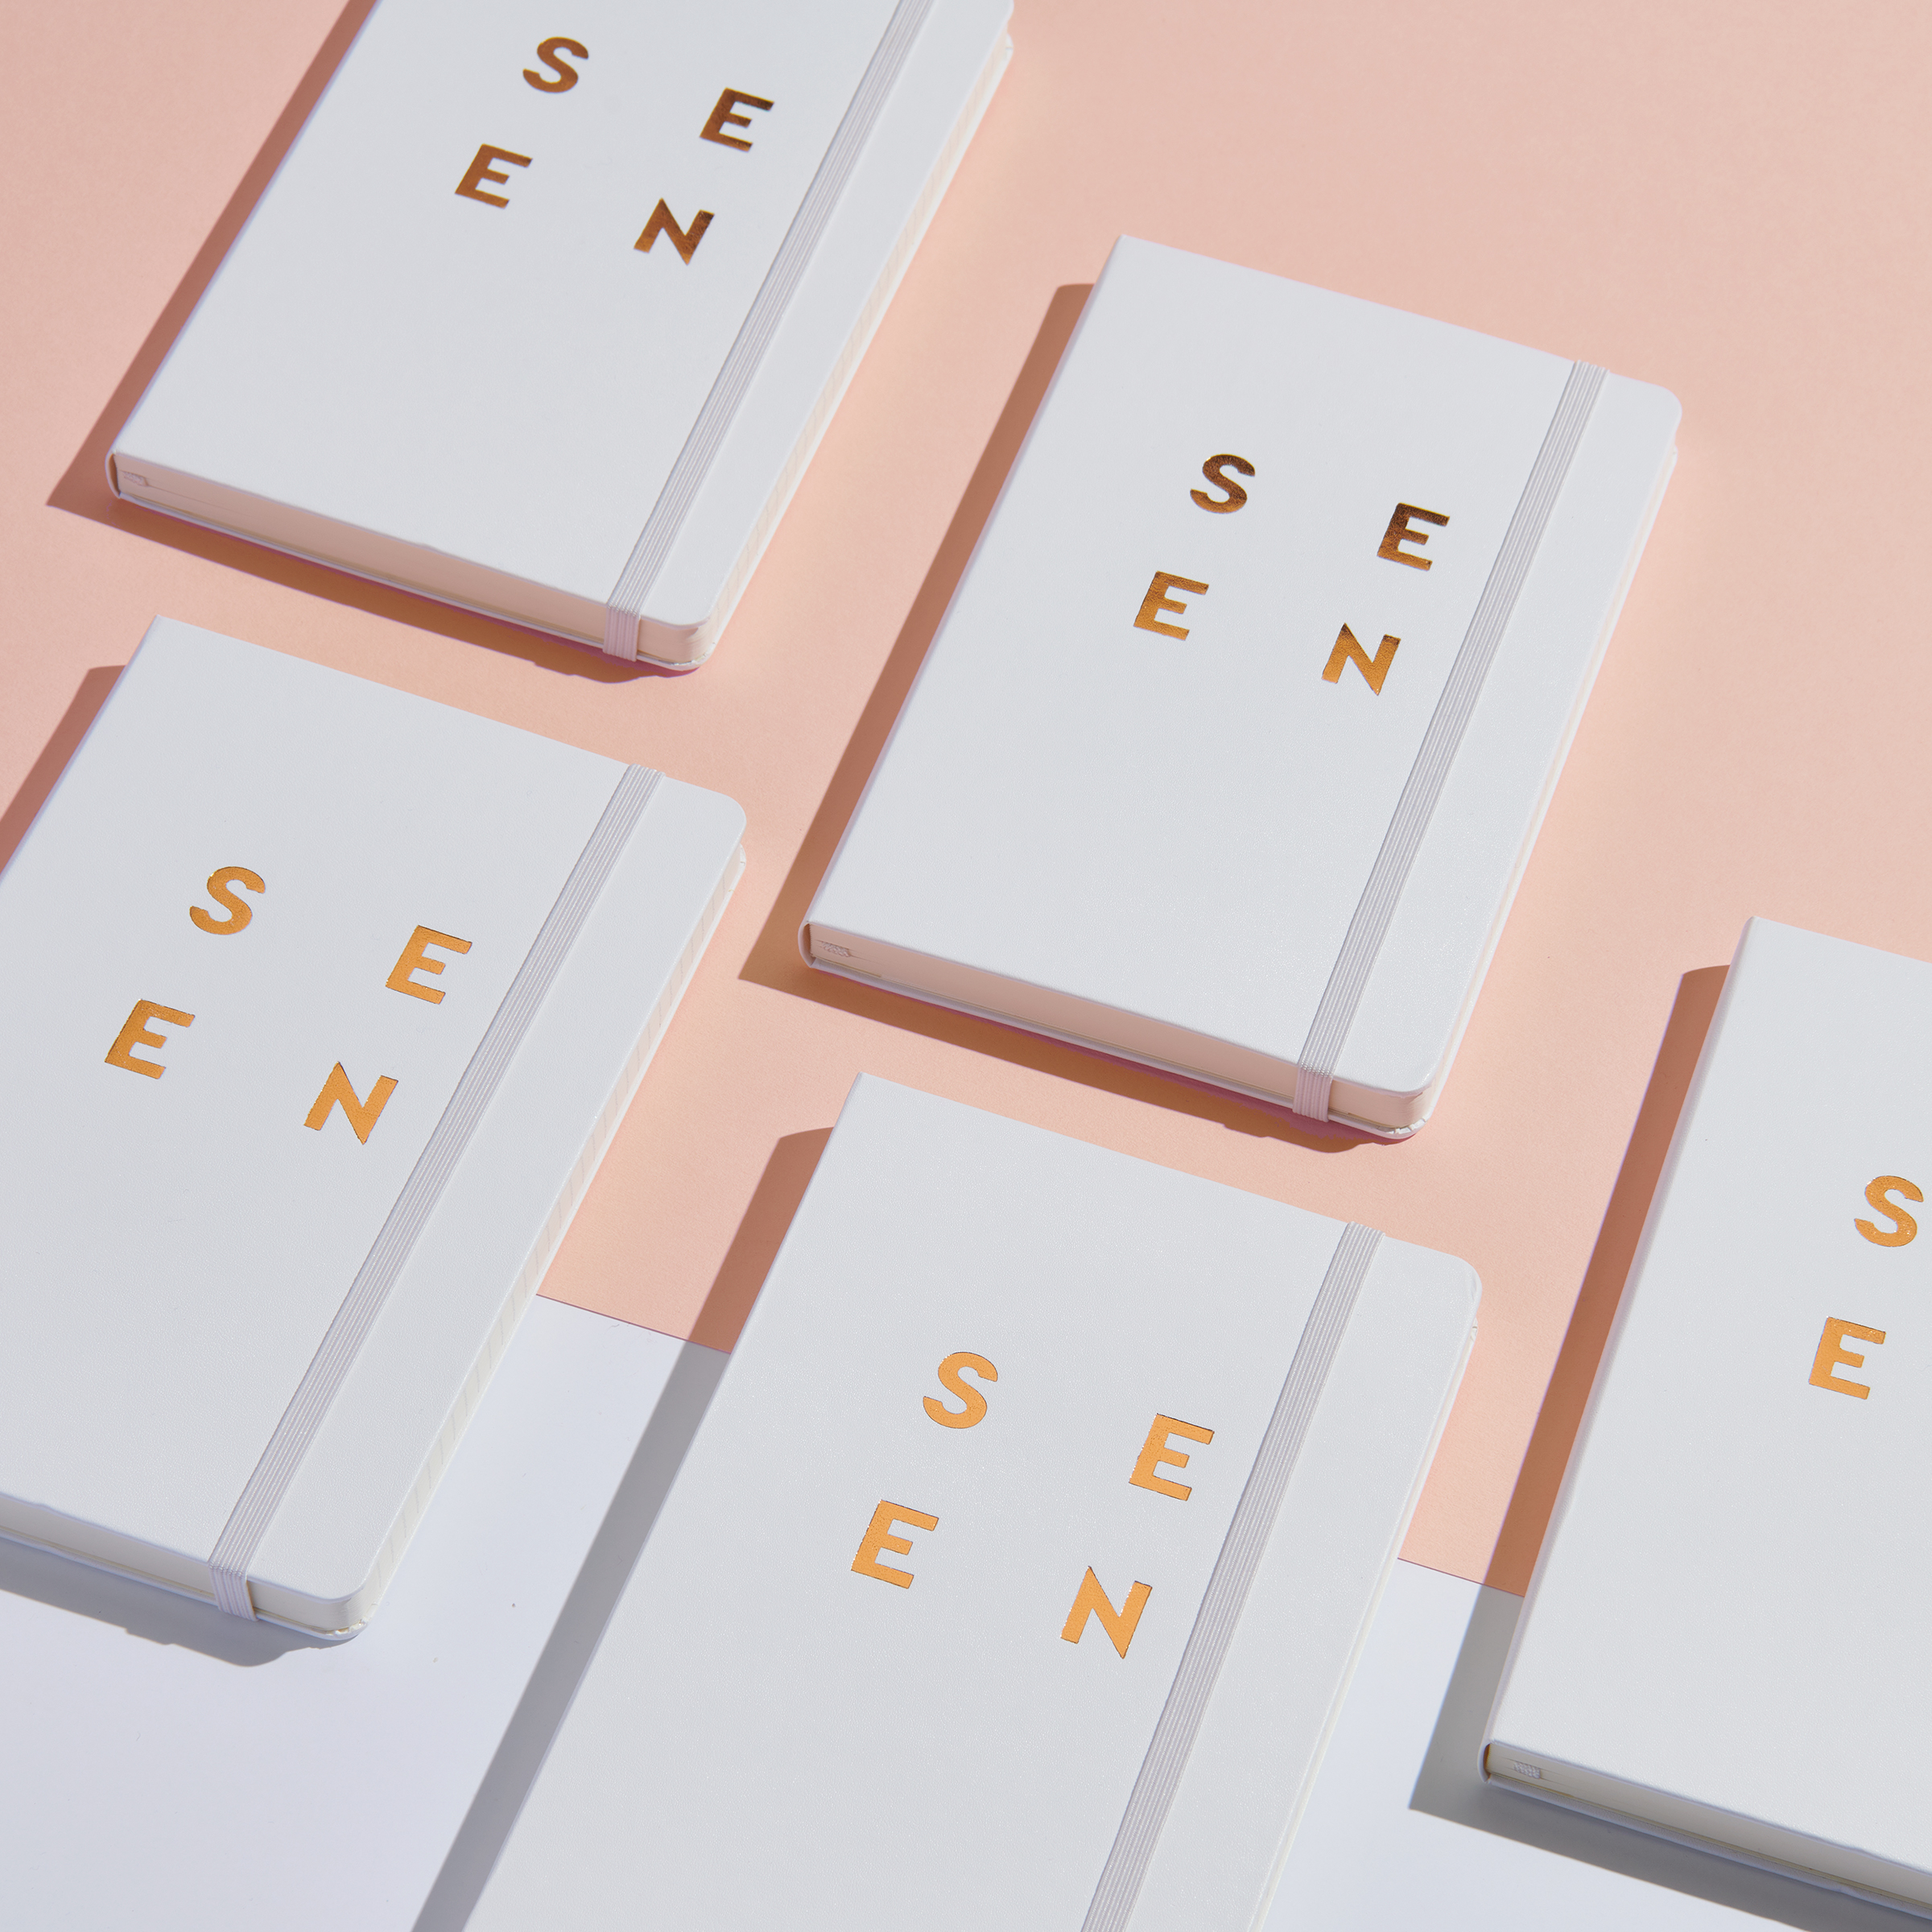 SEEN journals designed by Werner Design Werks